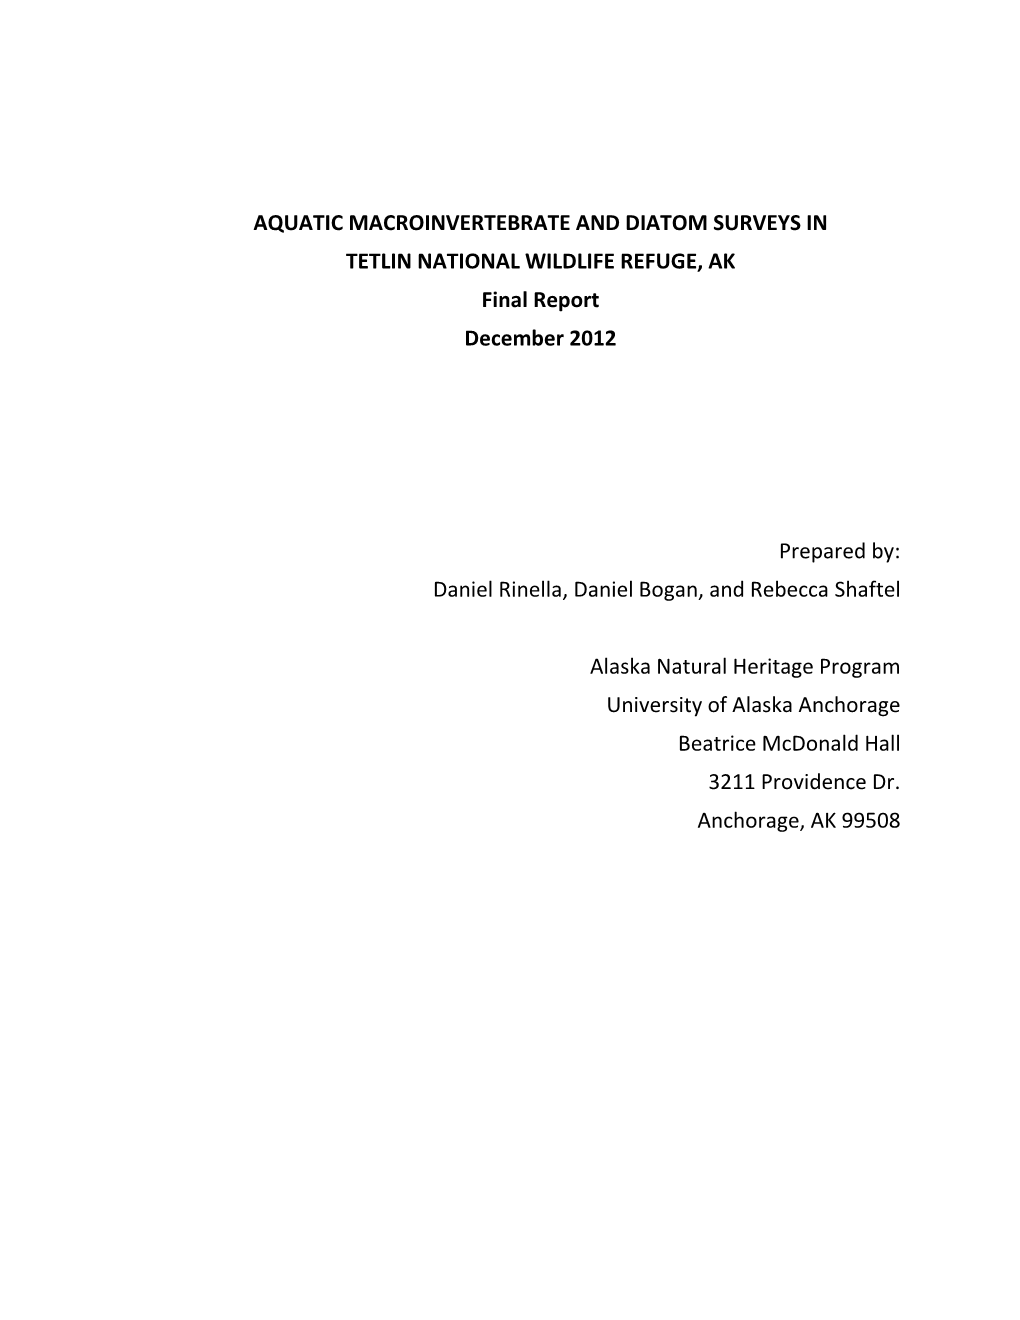 AQUATIC MACROINVERTEBRATE and DIATOM SURVEYS in TETLIN NATIONAL WILDLIFE REFUGE, AK Final Report December 2012